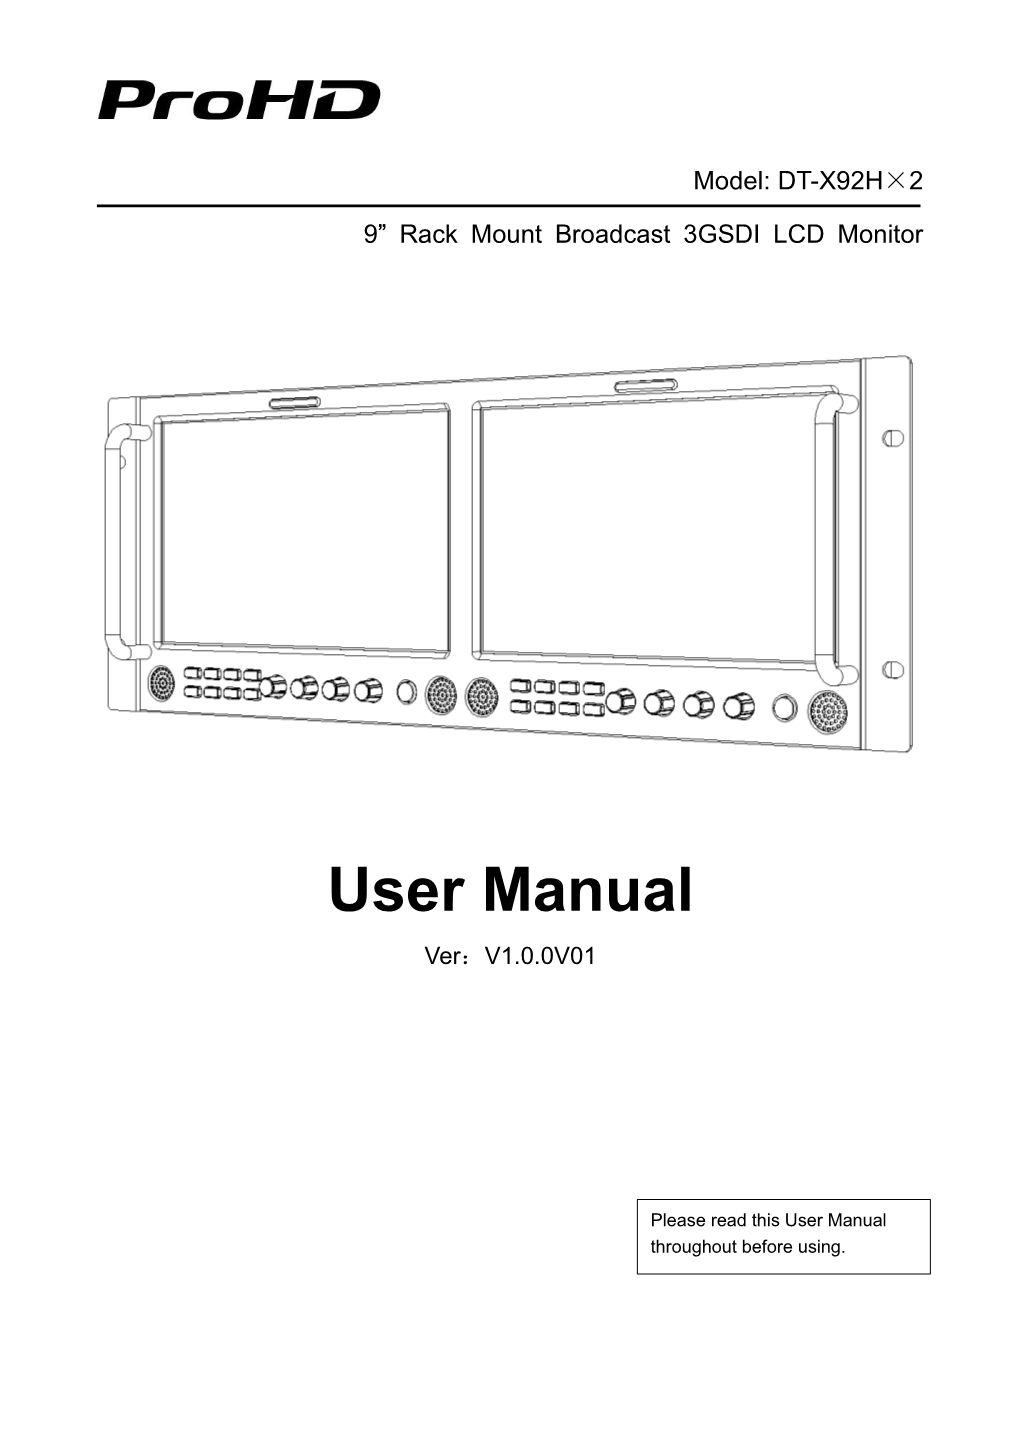 User Manual Ver：V1.0.0V01